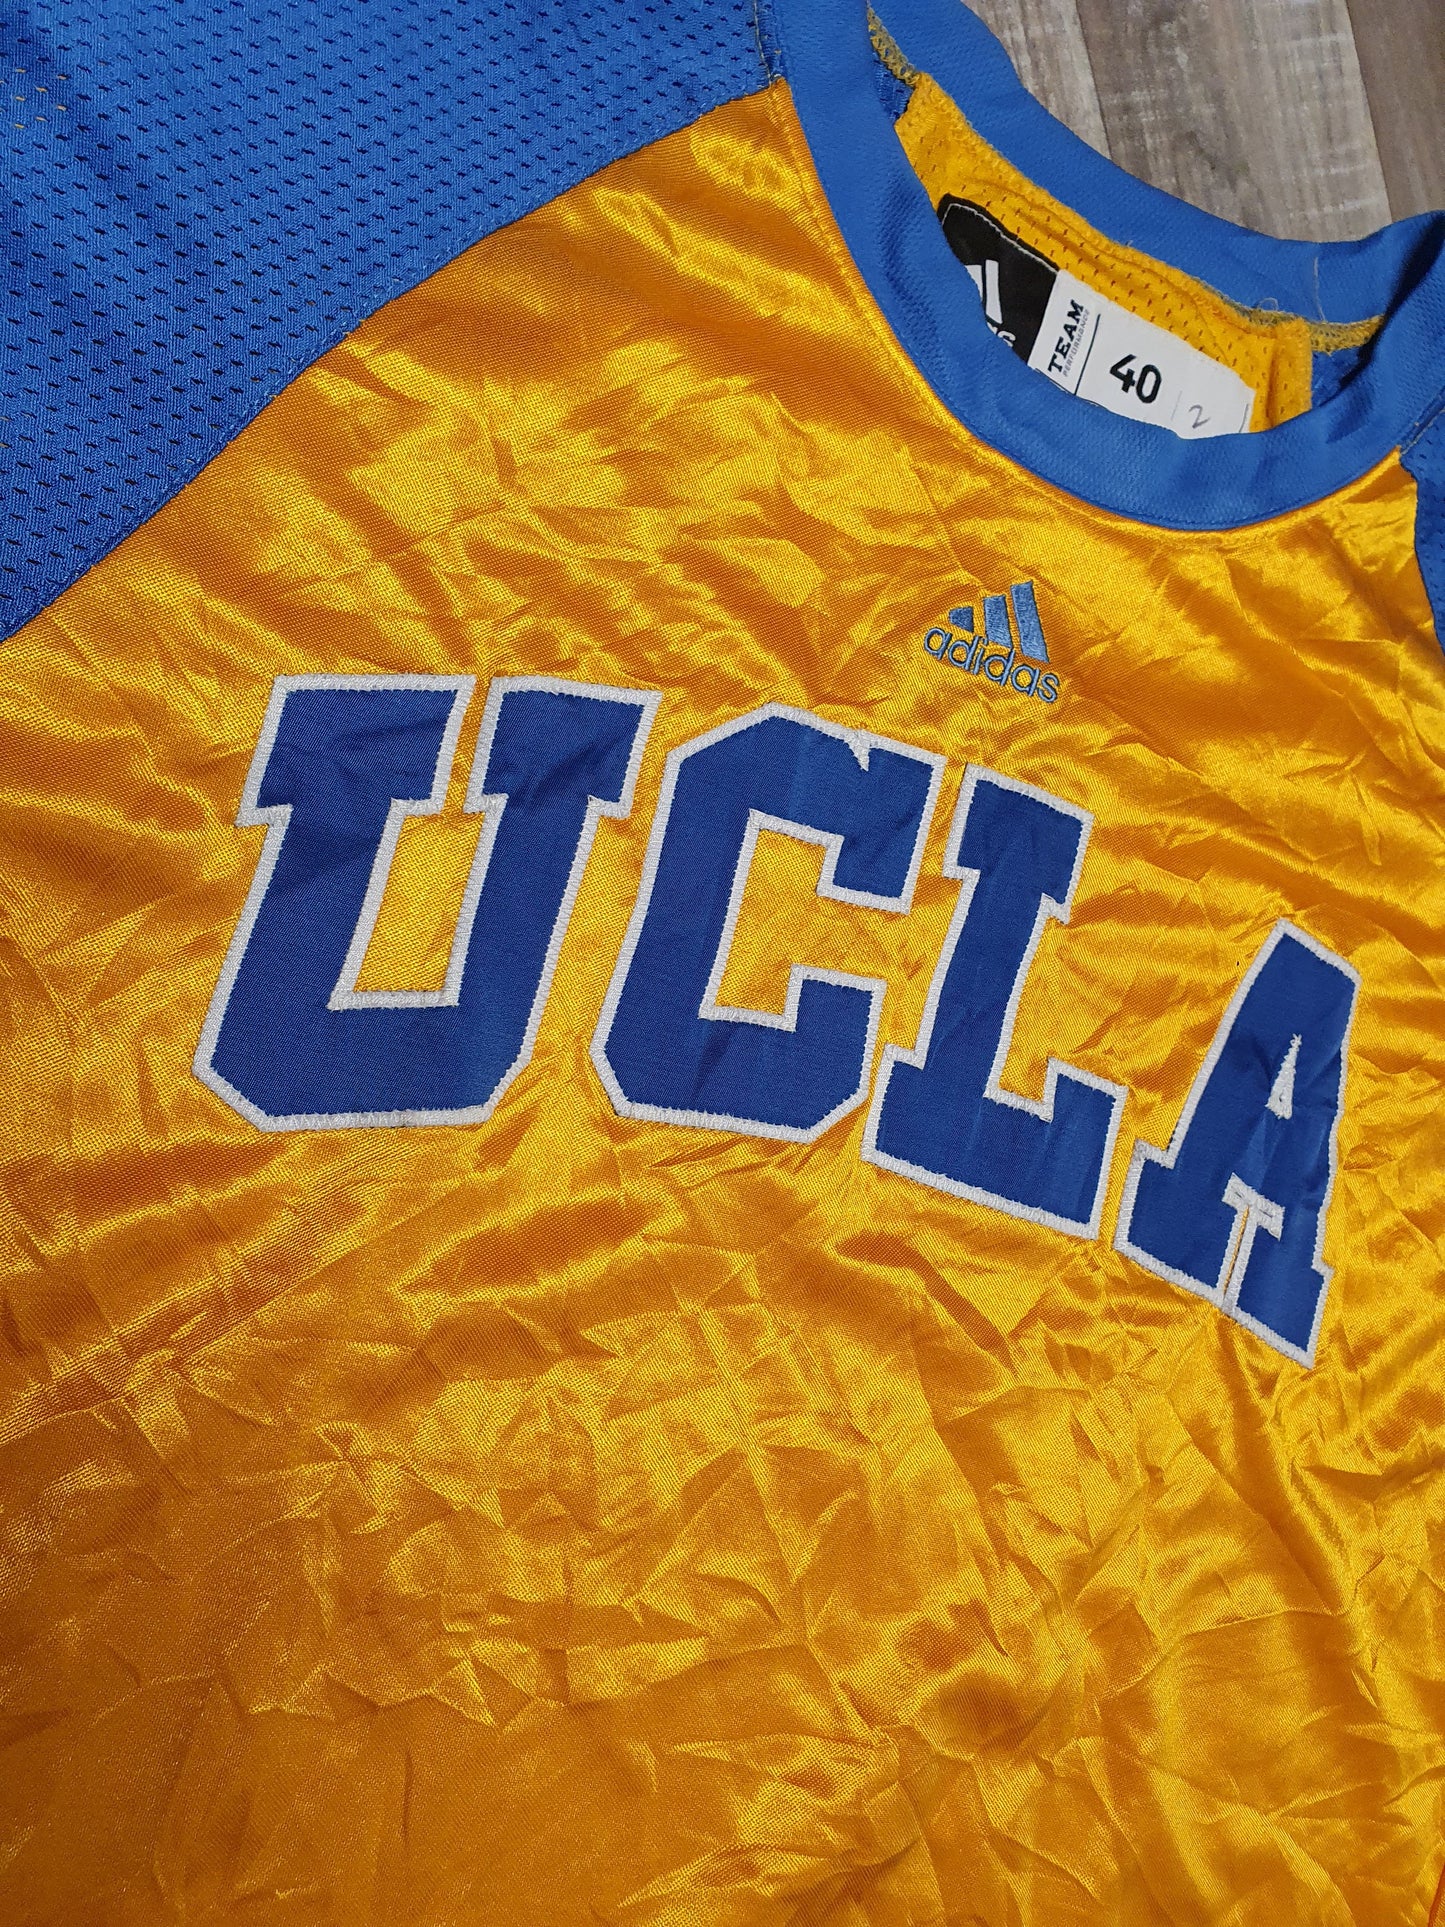 UCLA Bruins Warm Up T-Shirt Size Large